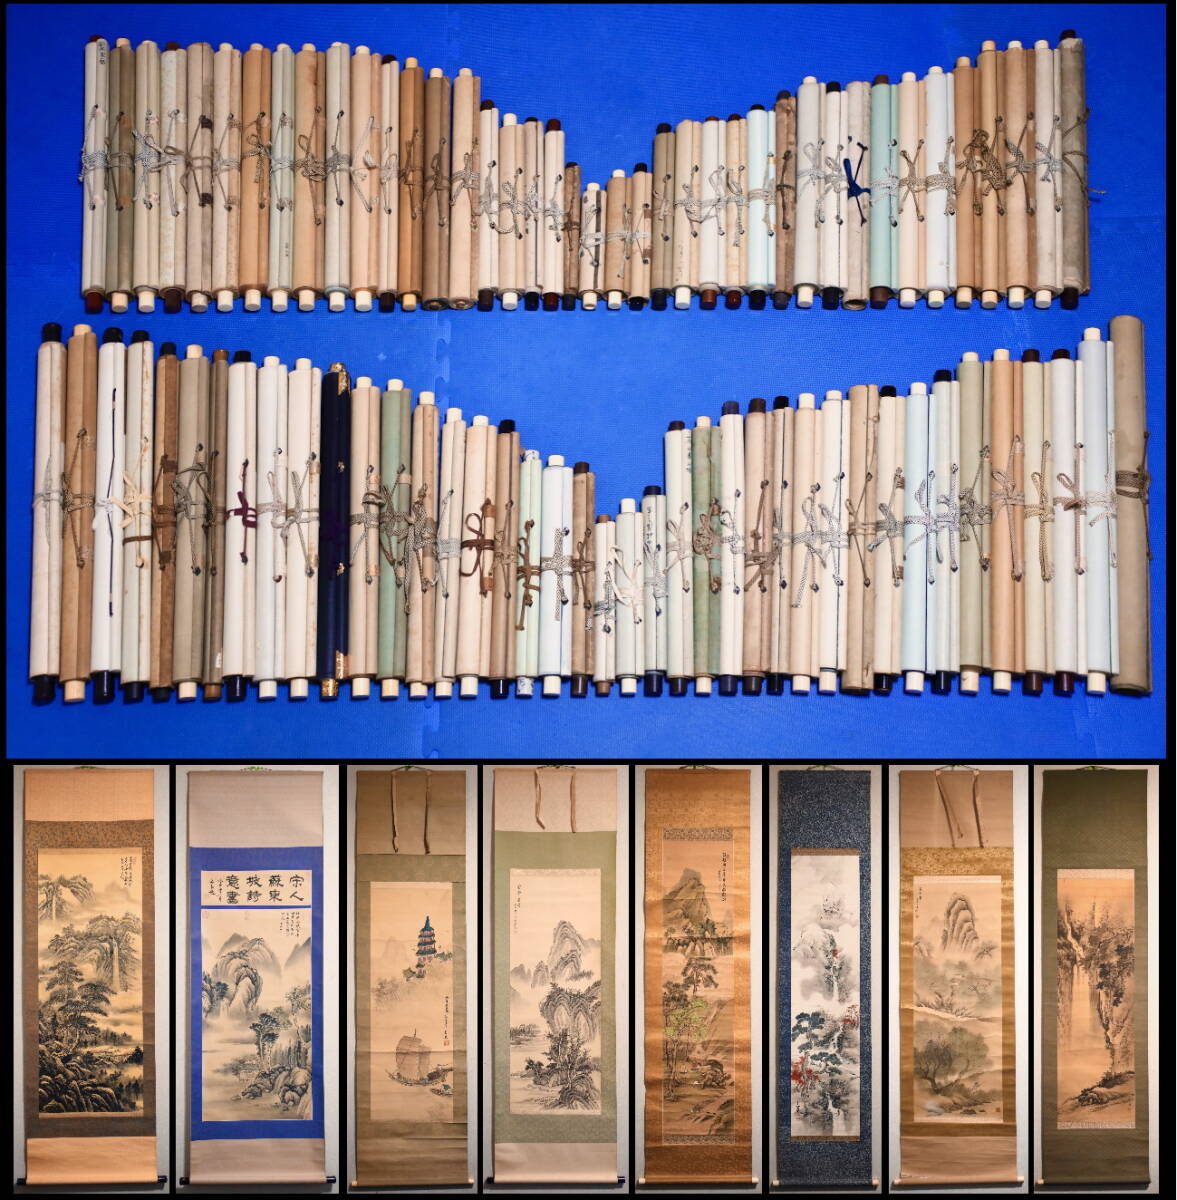 掛軸 大量 80本 書画 「山水 花鳥 仏画 中国」 いろいろ まとめて p5の画像1